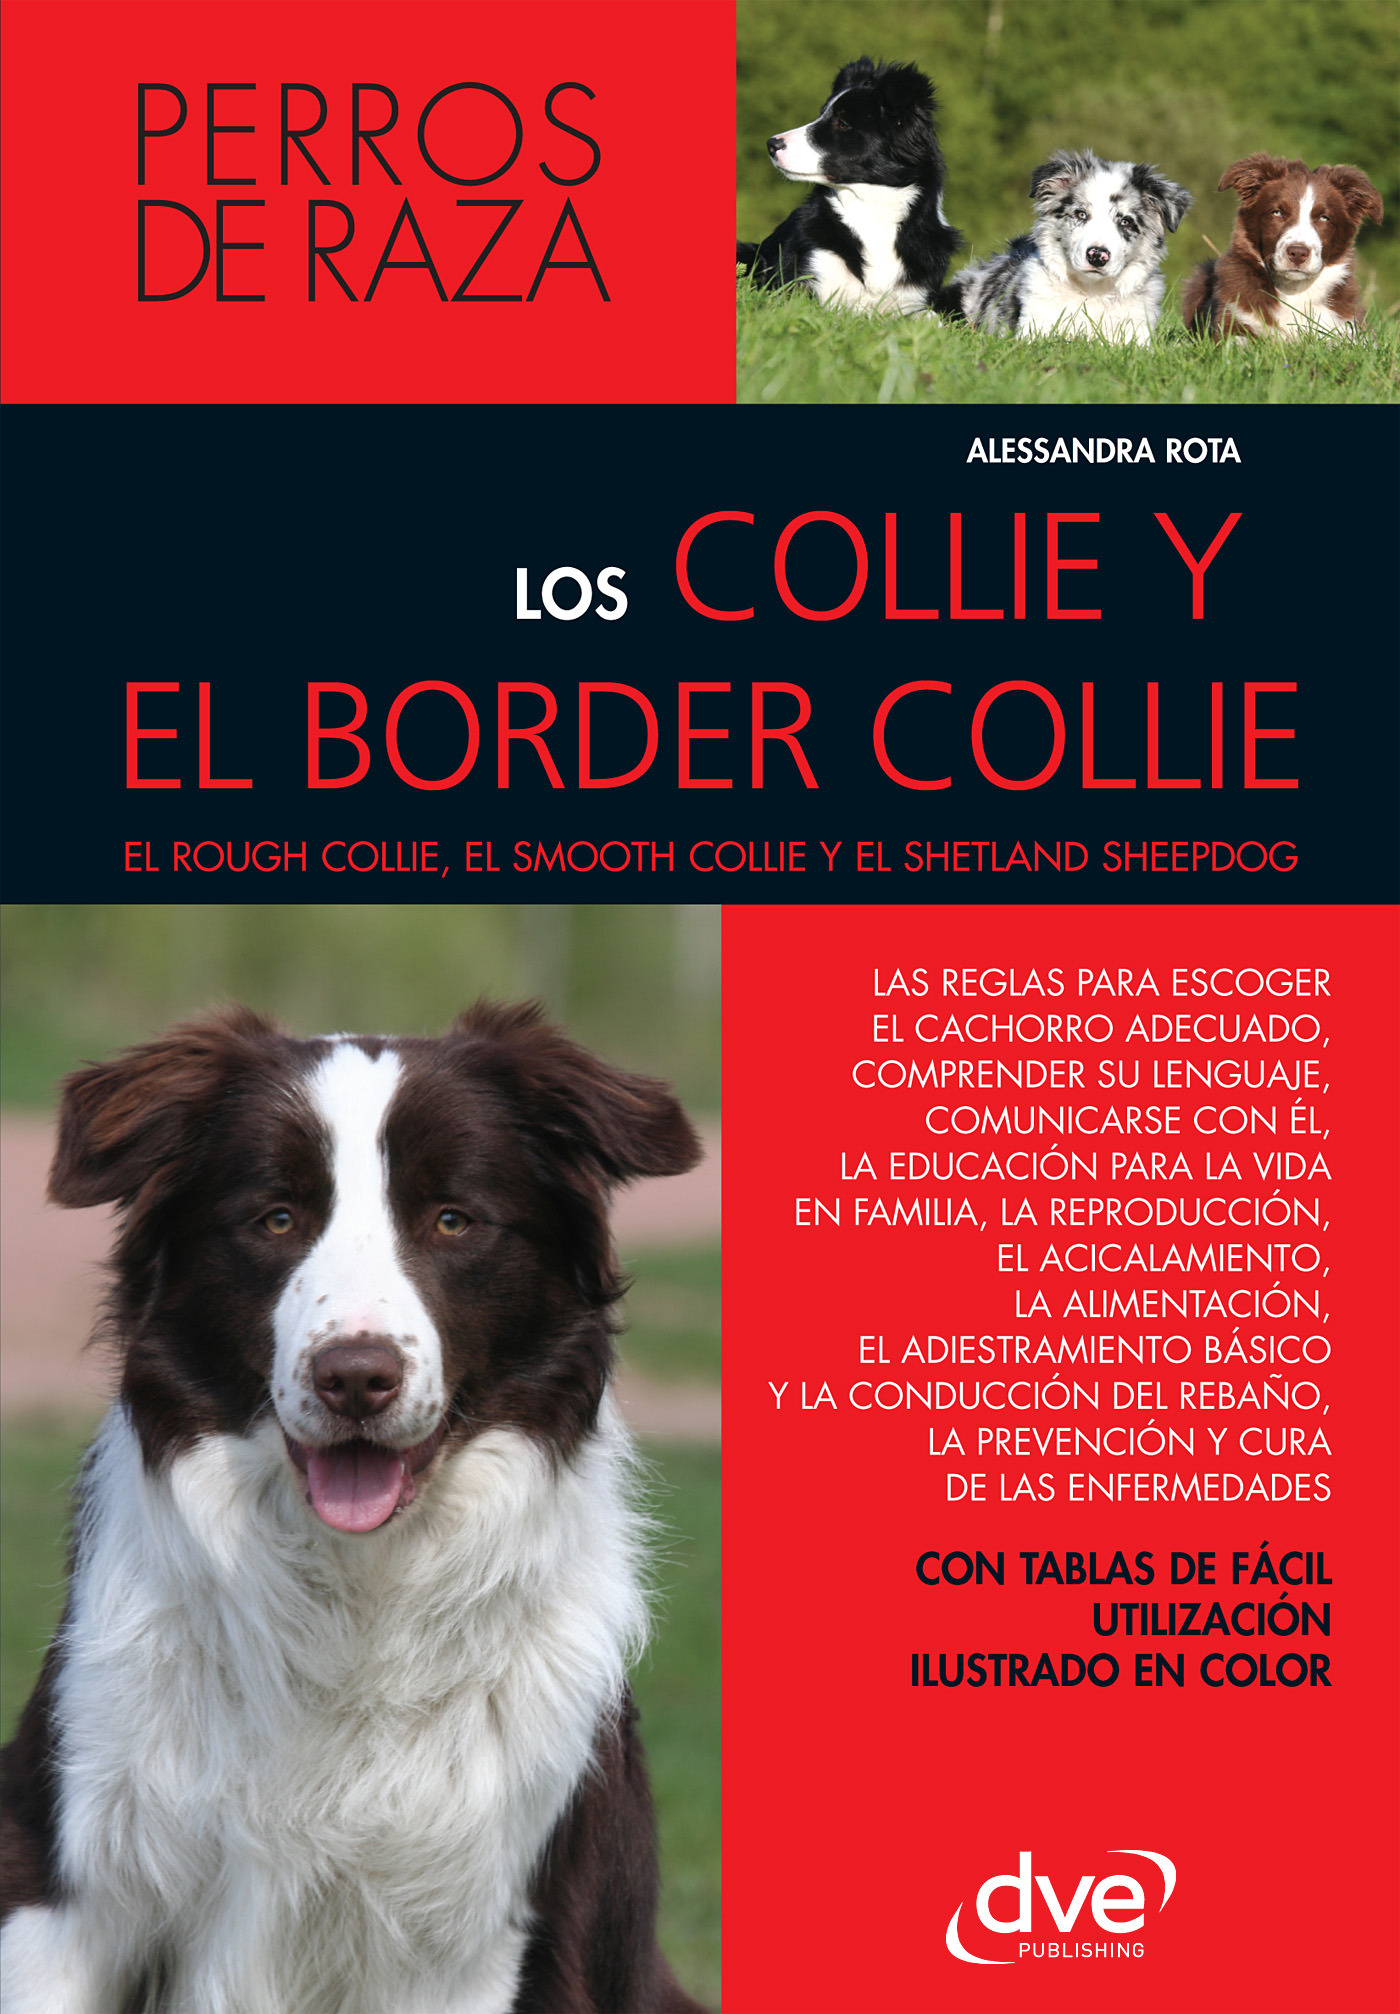 Rota, Alessandra - Los collie y el border collie, ebook